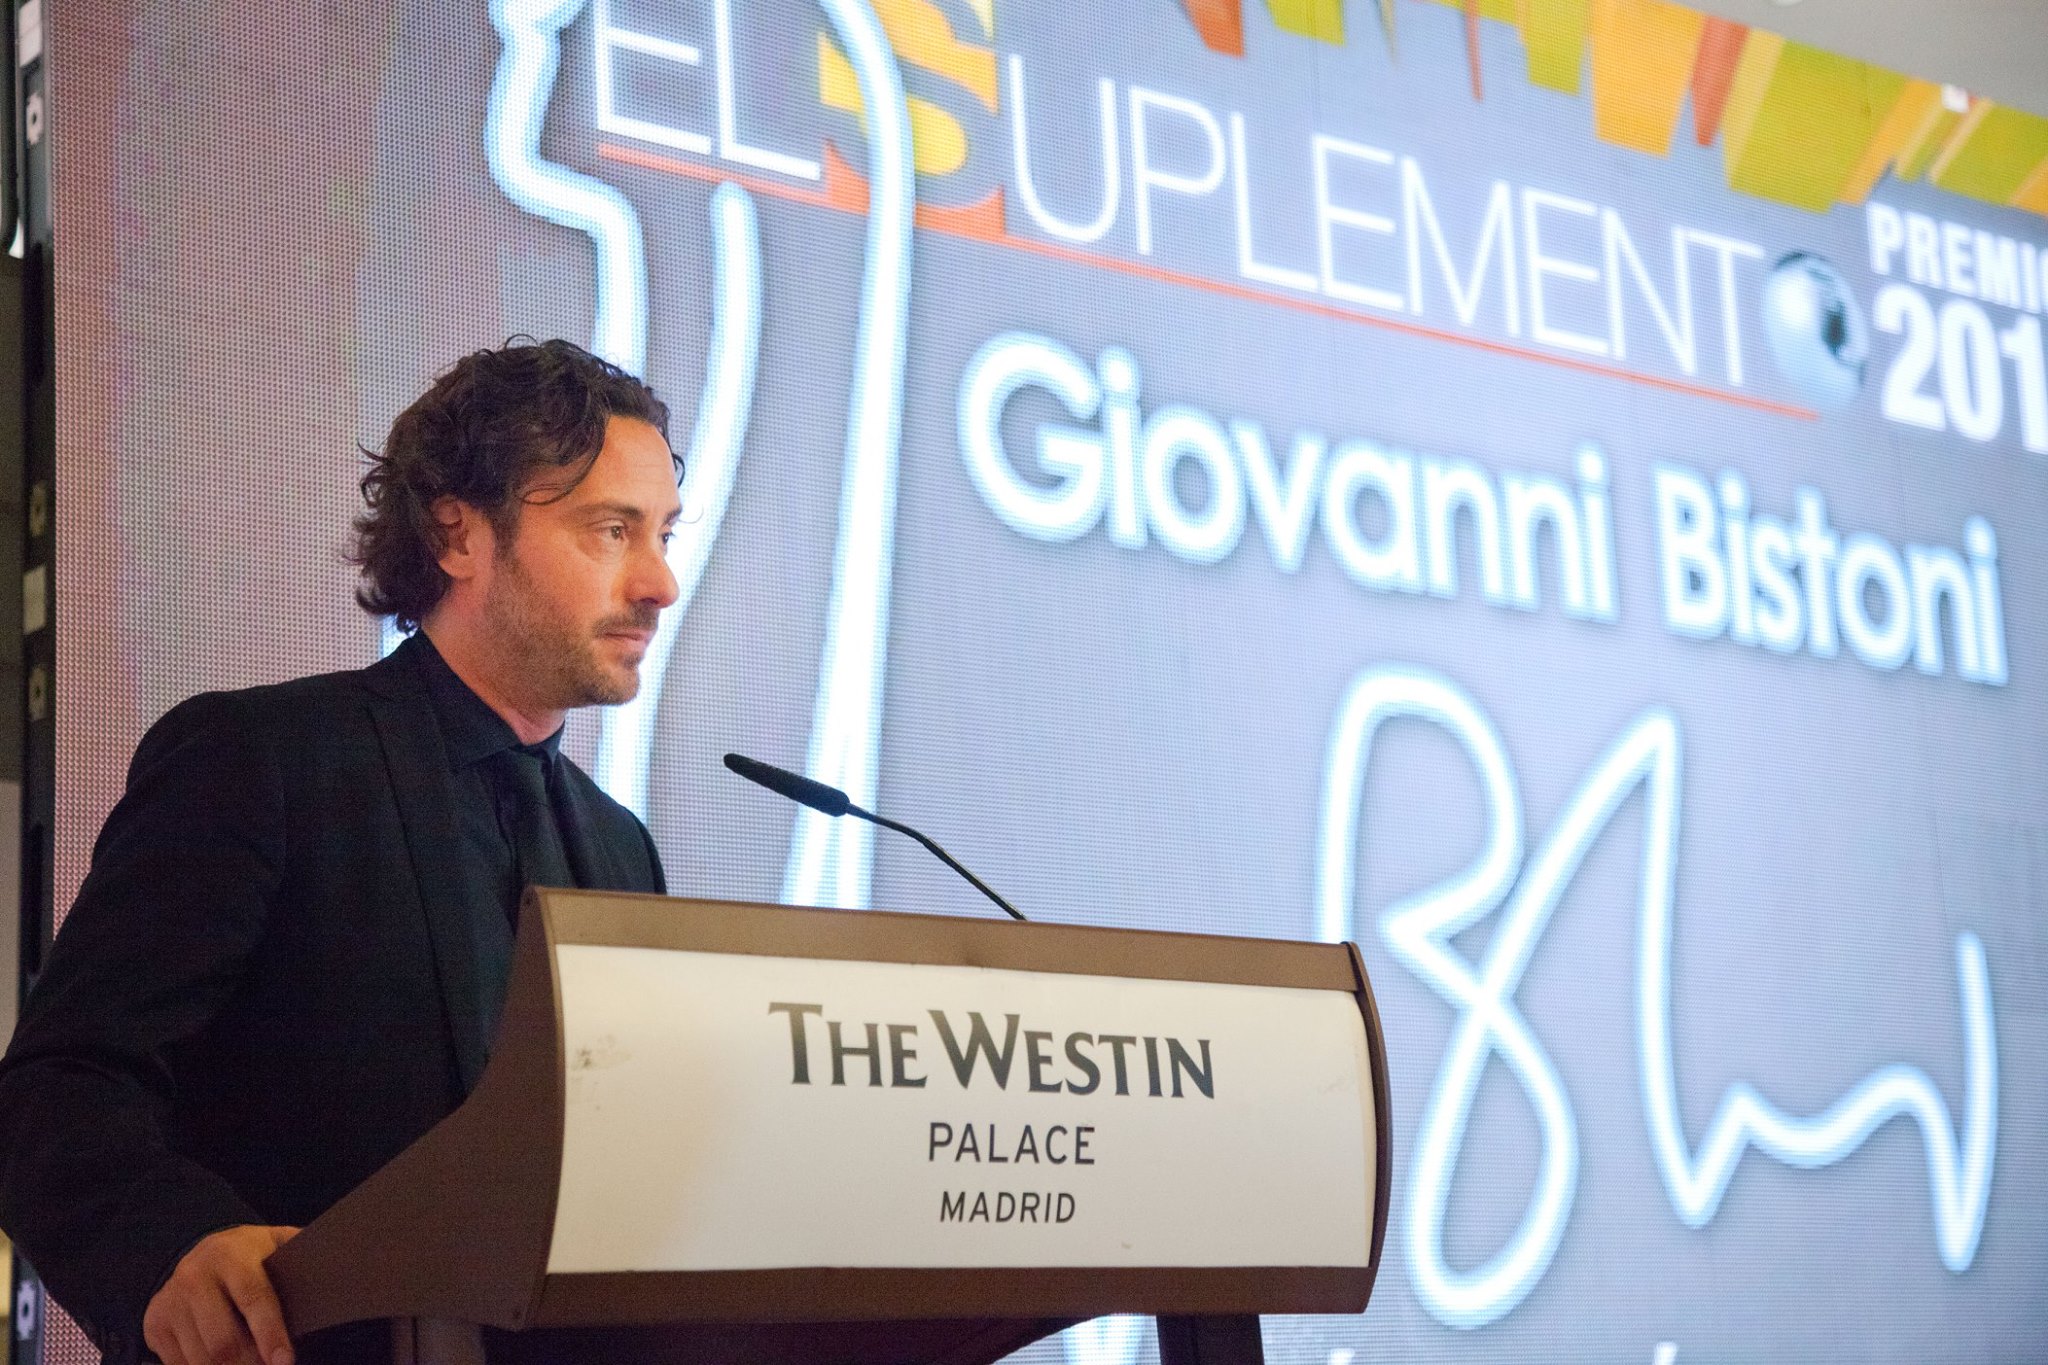 El doctor Giovanni Bistoni recoge el Premio El Suplemento de Cirugía Plástica y Estética 2015